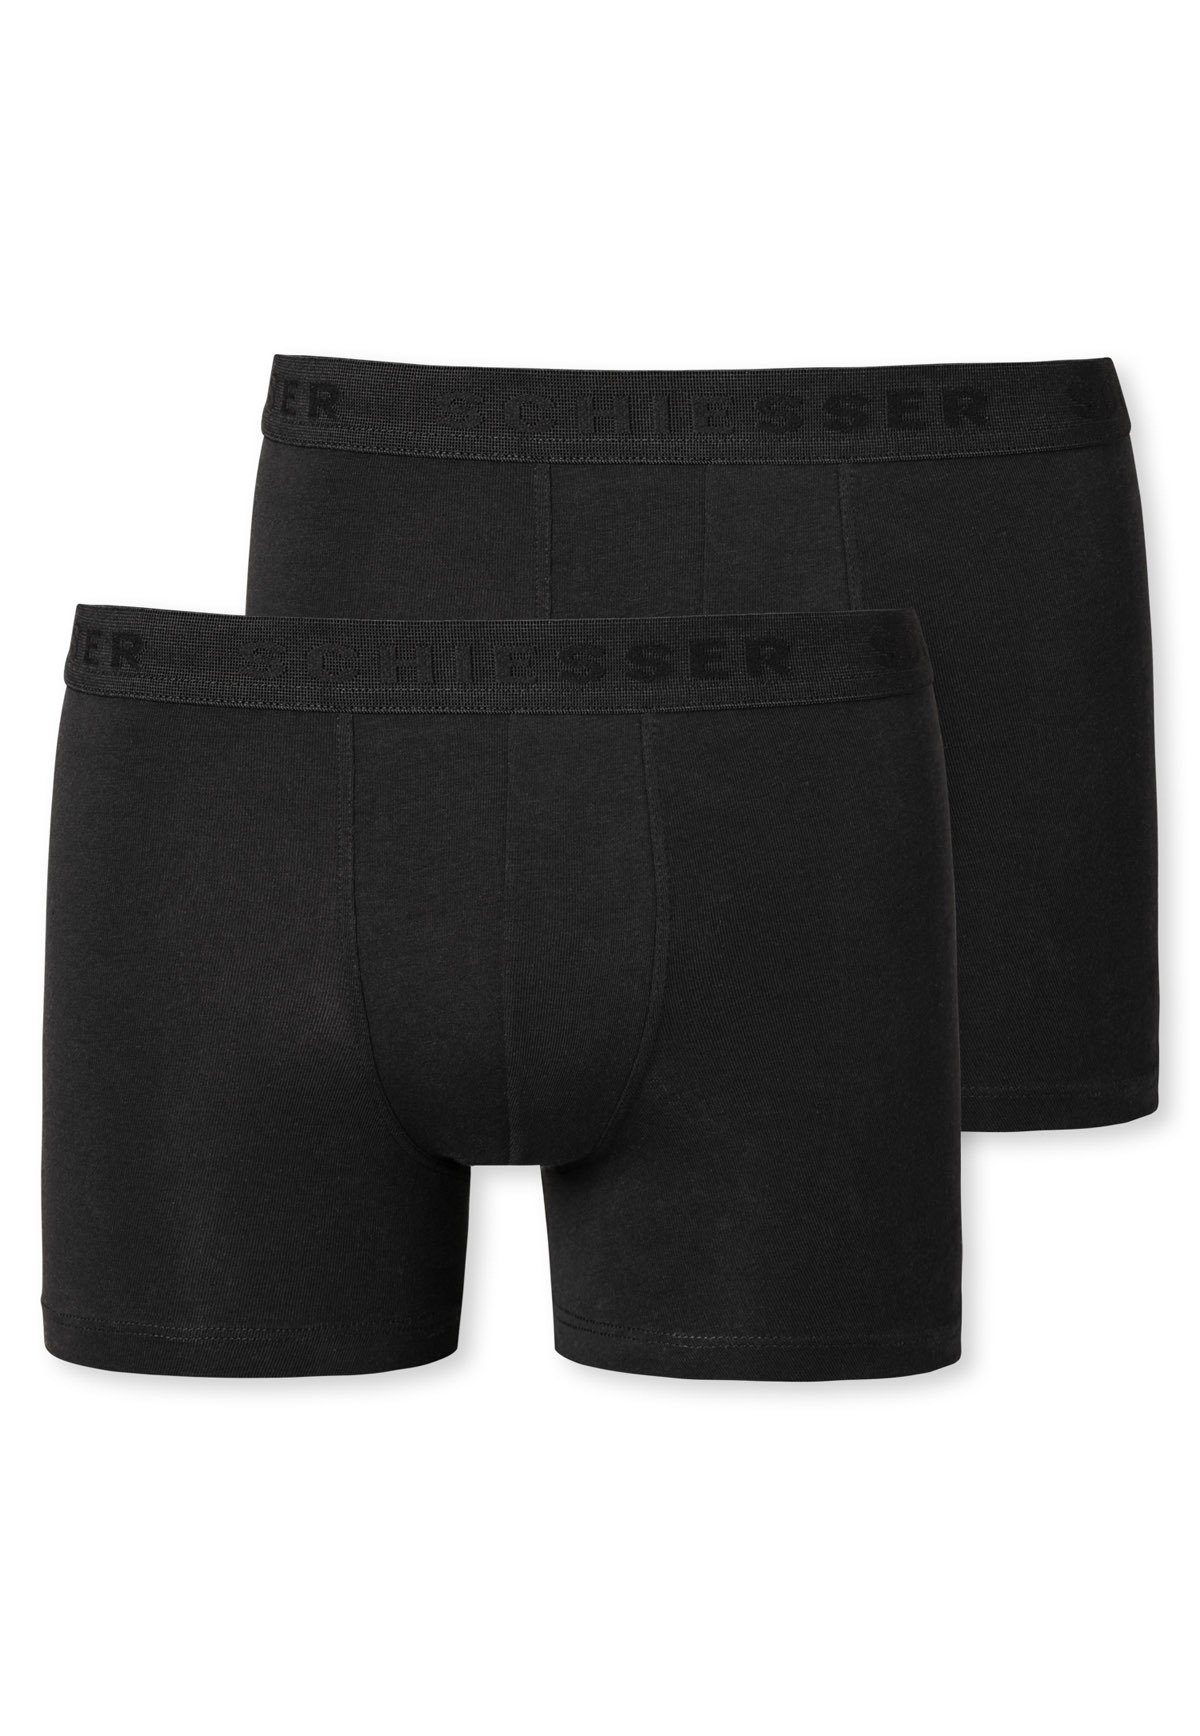 Serie Schwarz 2er - einfarbig Schiesser Boxer Pack Shorts 95/5, Jungen